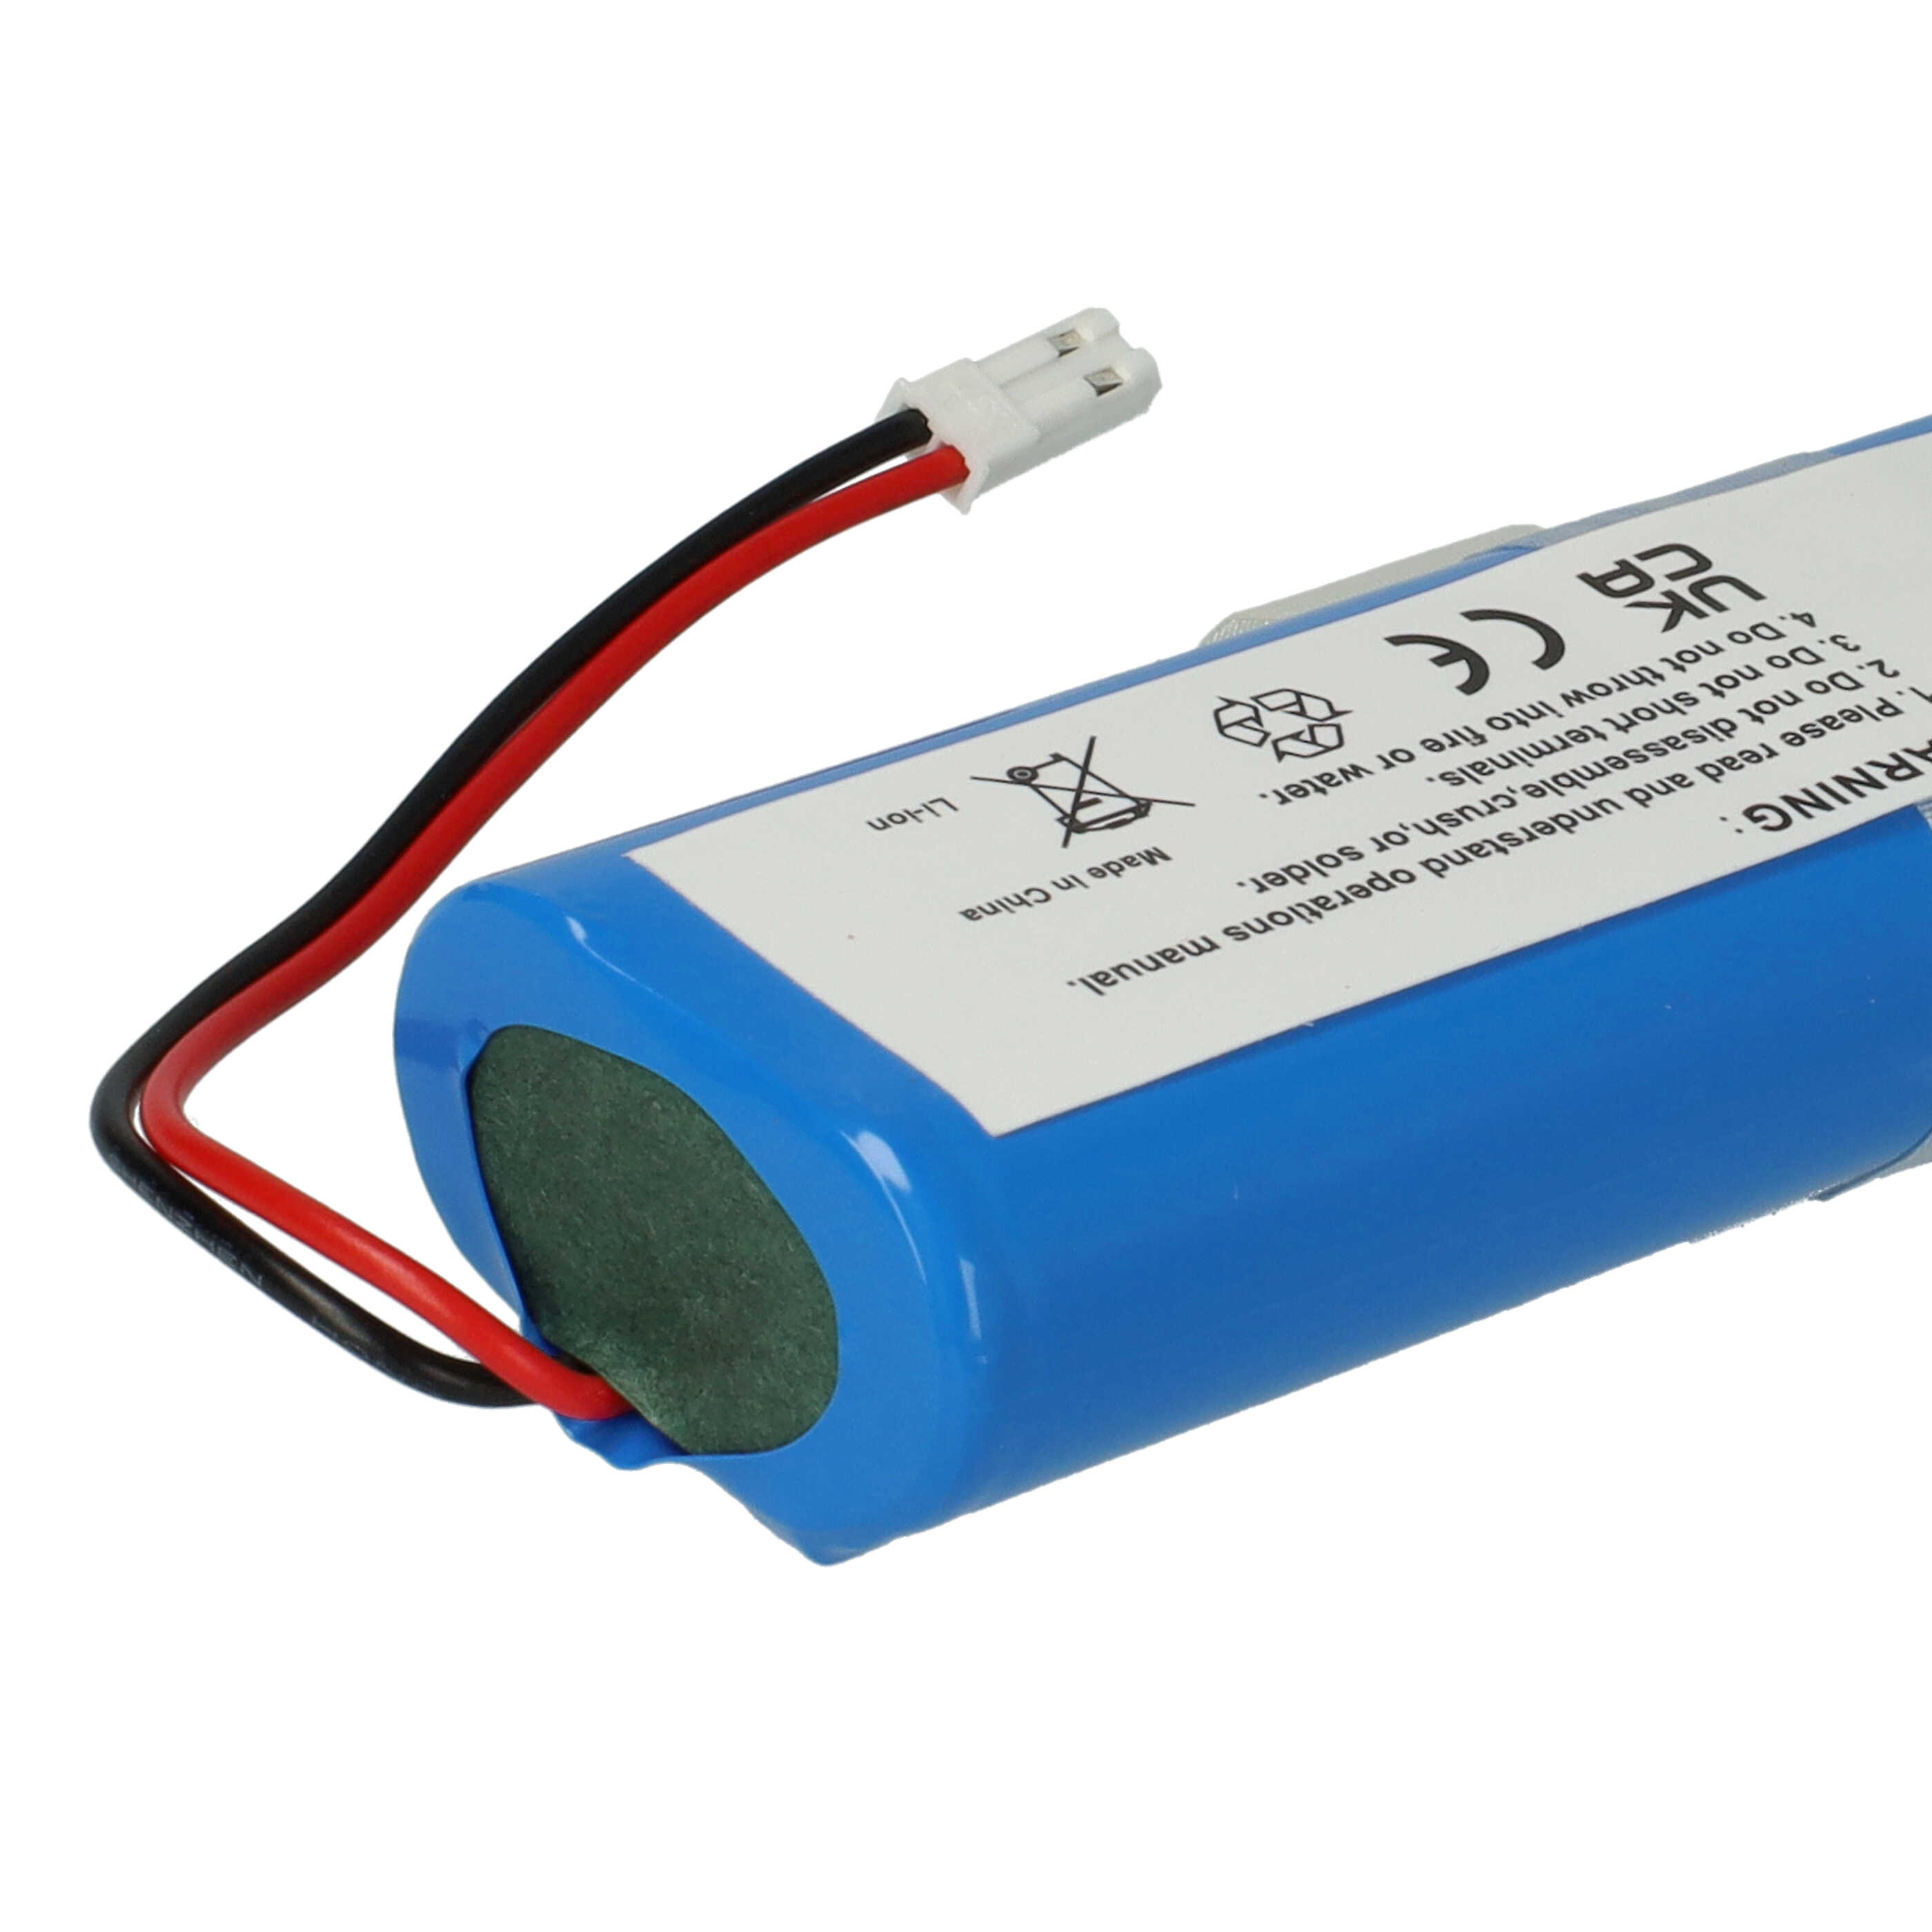 Batería reemplaza iLife Ay-18650B4, 18650B4-4S1P-AGX-2 para robot doméstico iLife - 3400 mAh 14,4 V Li-Ion